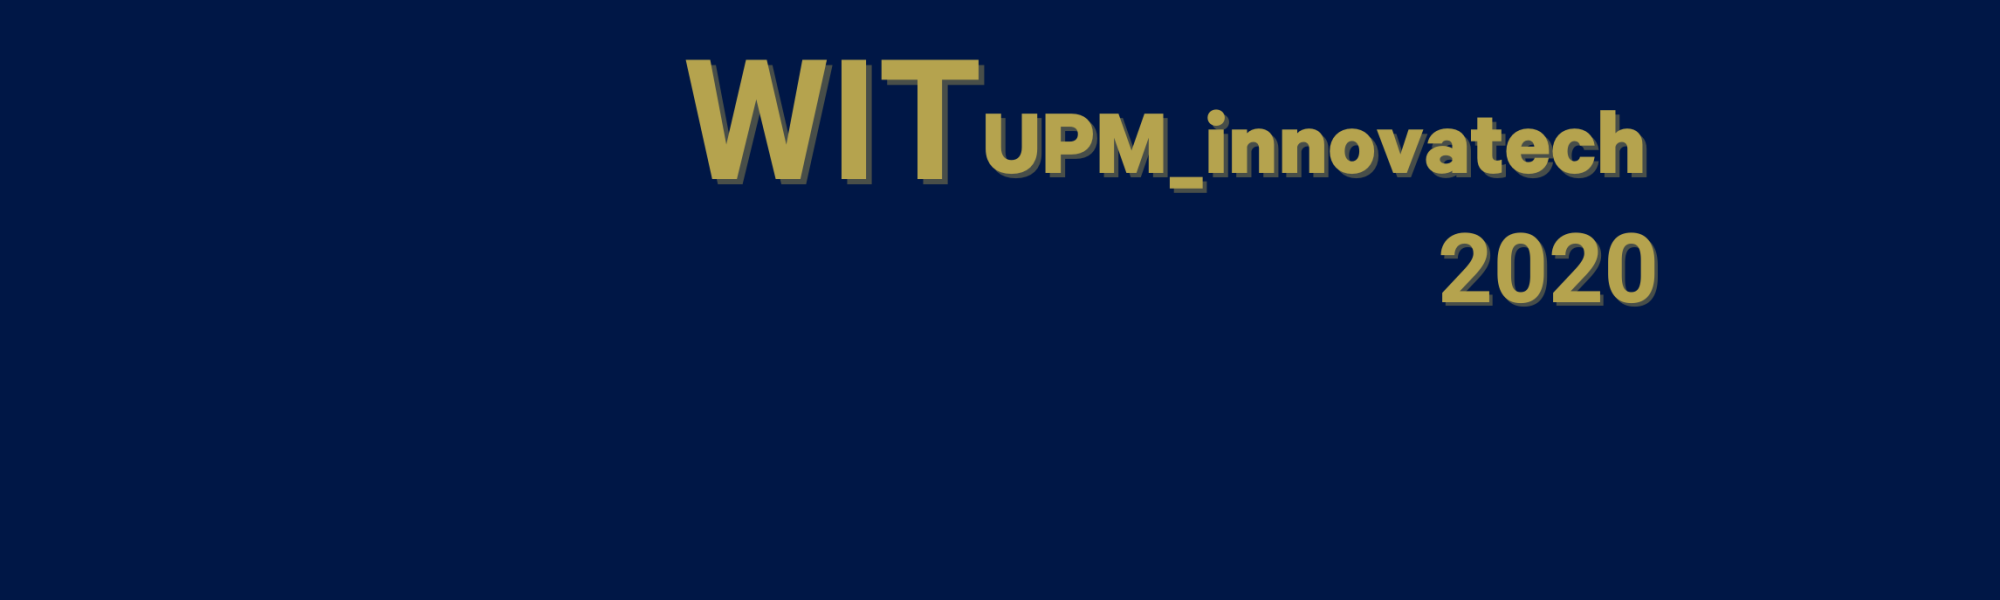 ASTP - WIT UPM innovatech: a technological innovation workshop